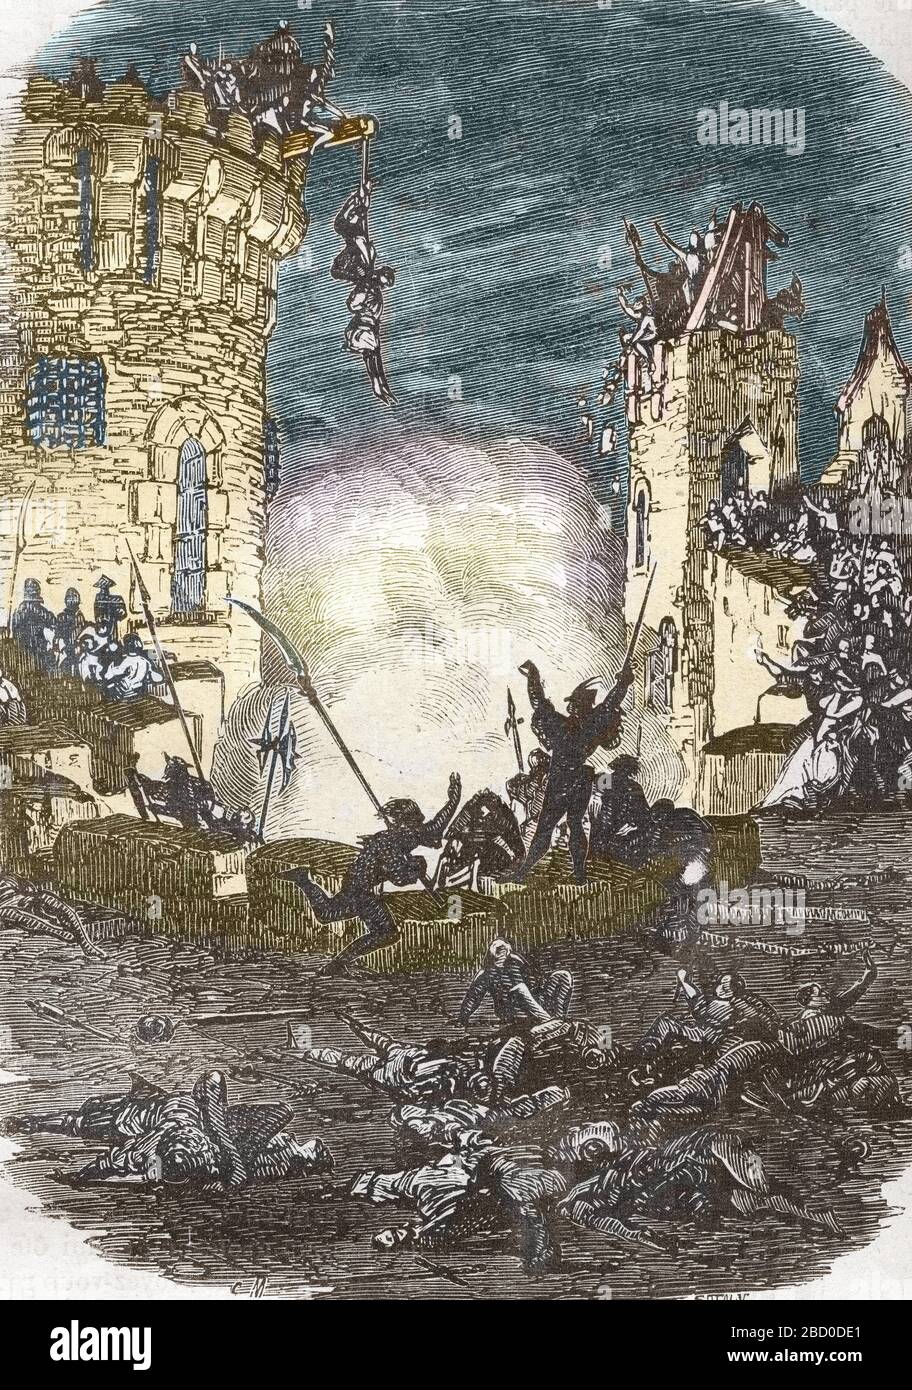 Grande jacquerie de 1358, soulevement paysan lors de la guerre de Cent ans - (Jacquerie, popular revolt in late medieval Europe led by peasants that t Stock Photo